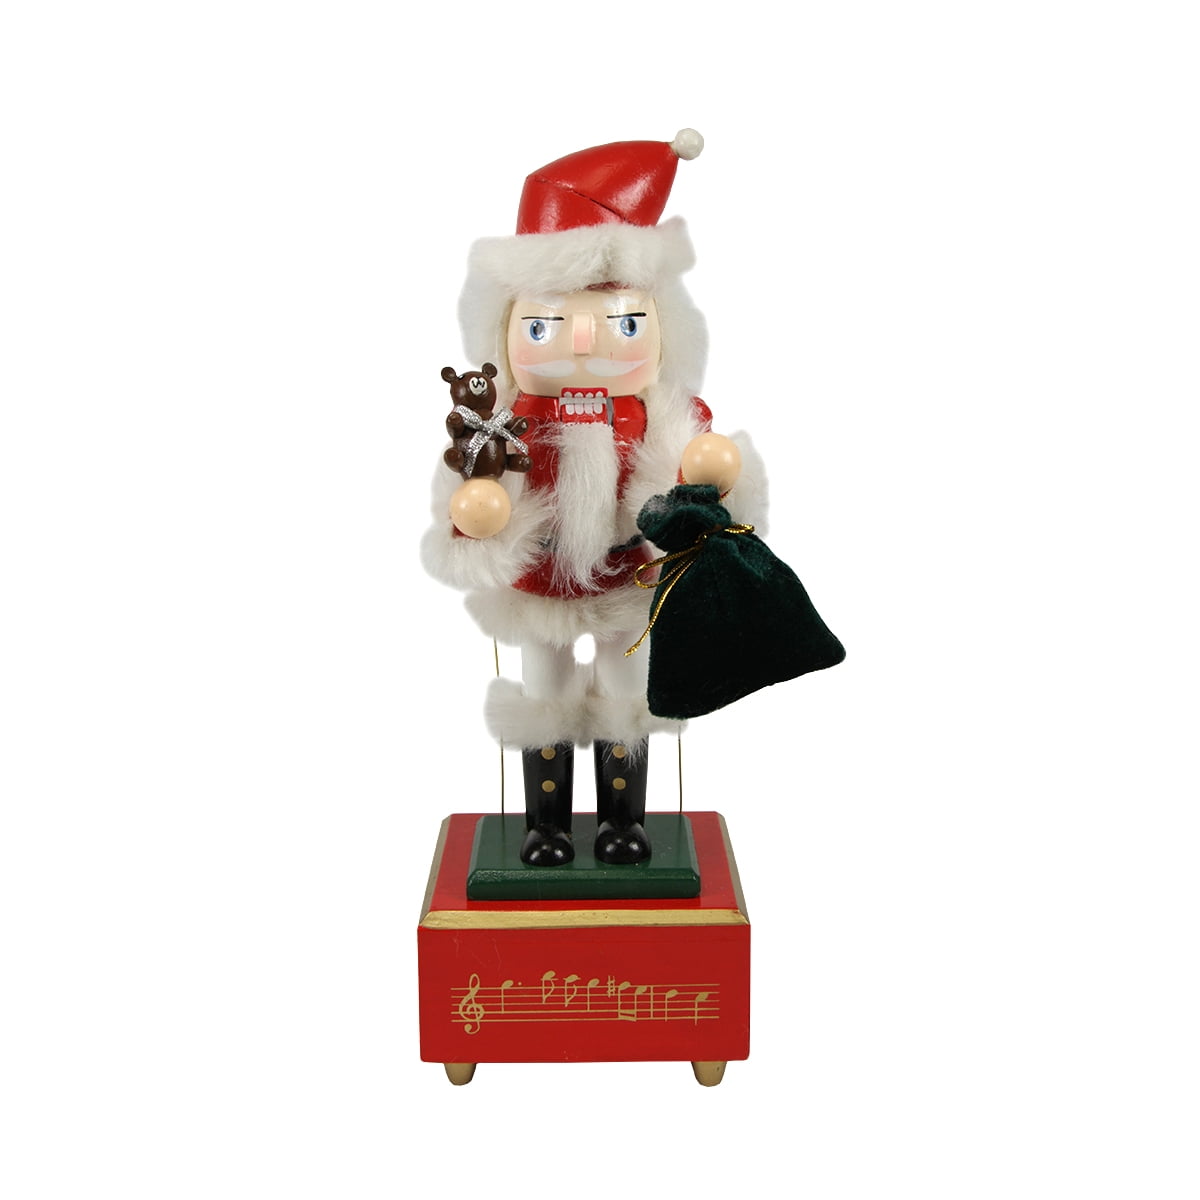 Great Christmas Home Decor Or A Gift 14.25/" Nutcracker Santa Clause